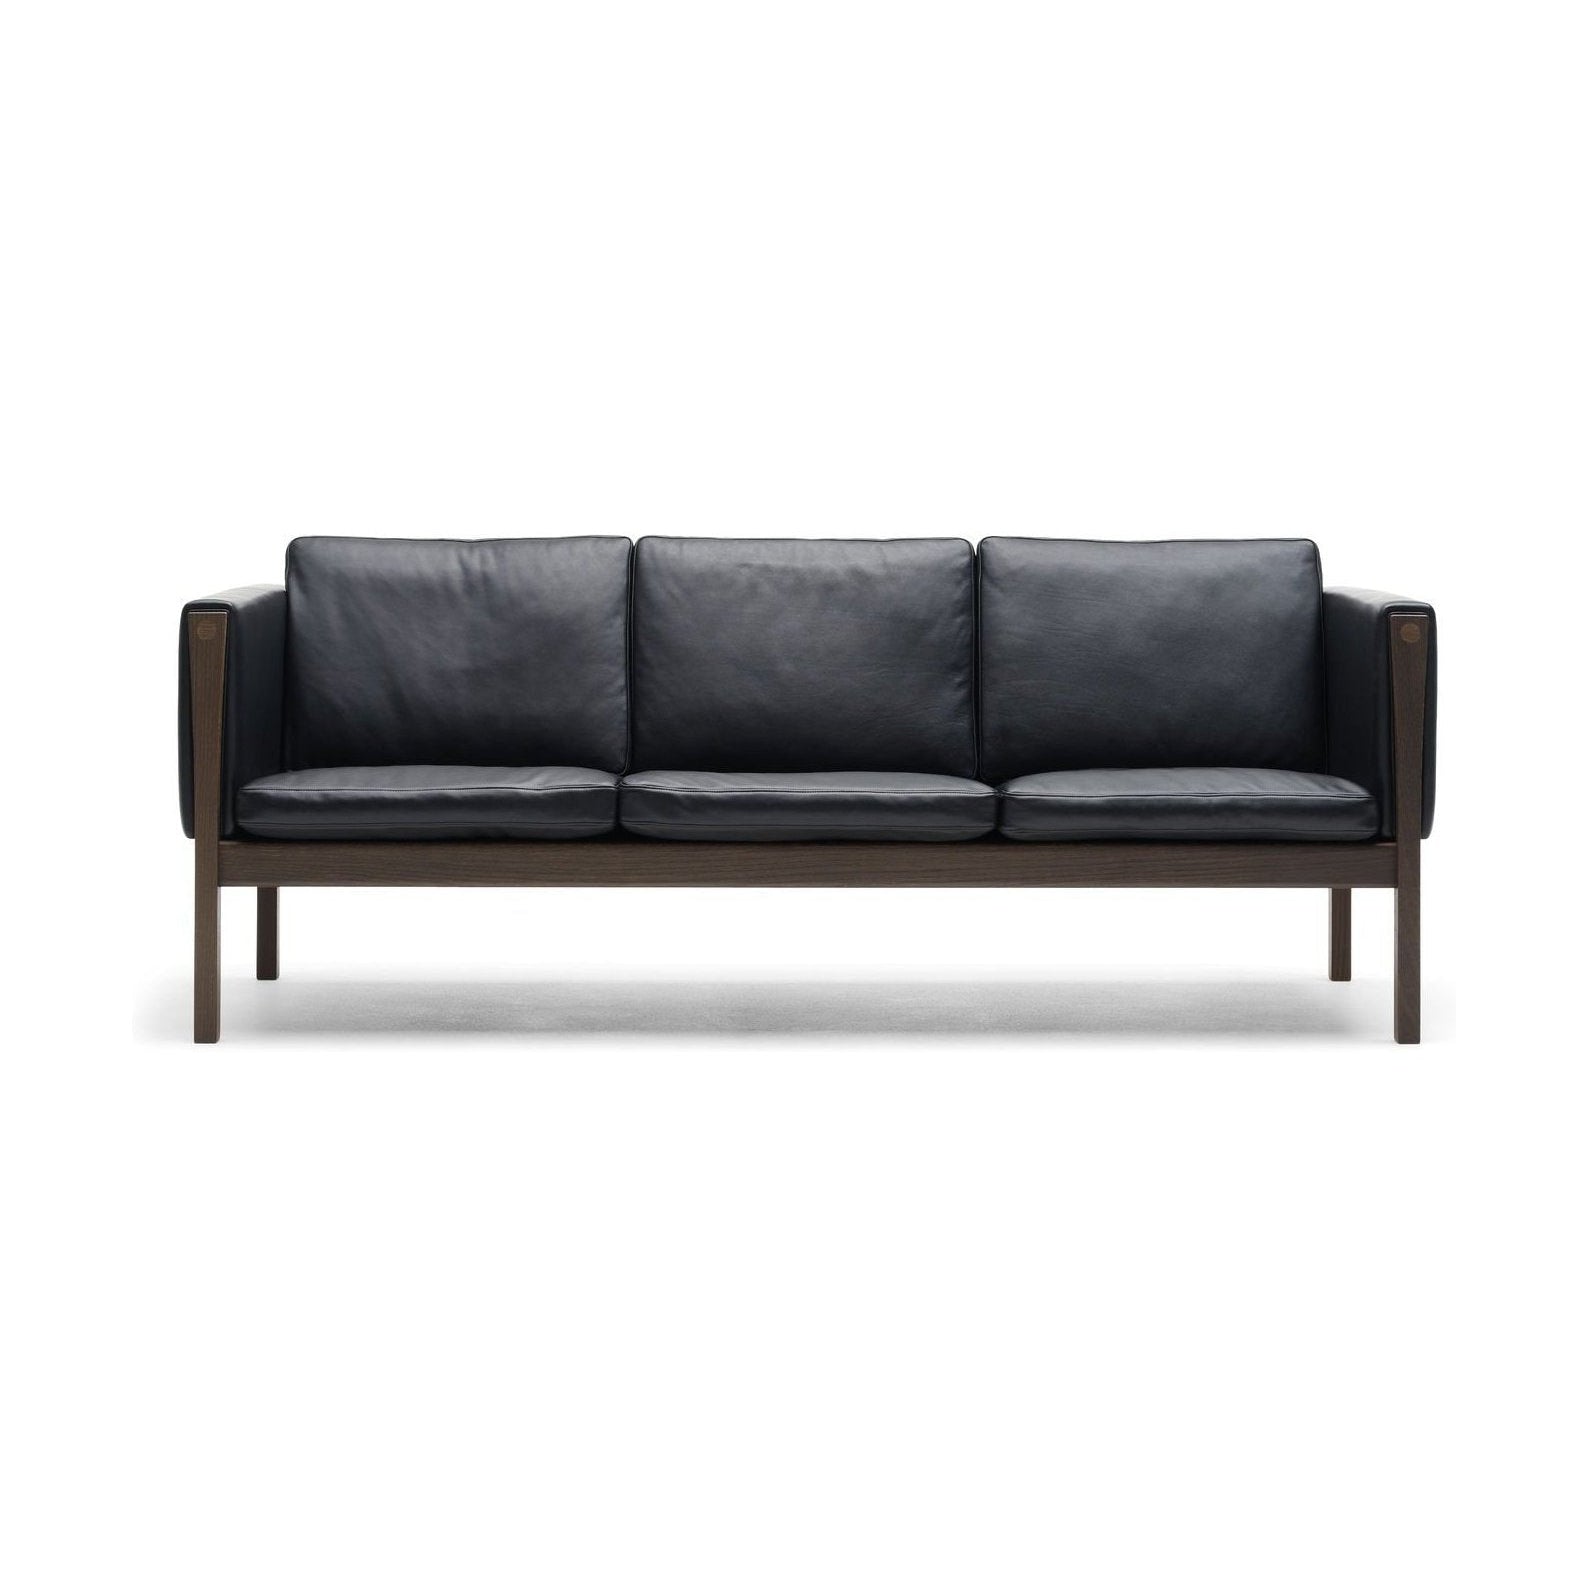 Carl Hansen CH163 divano, noce oliata/pelle nera